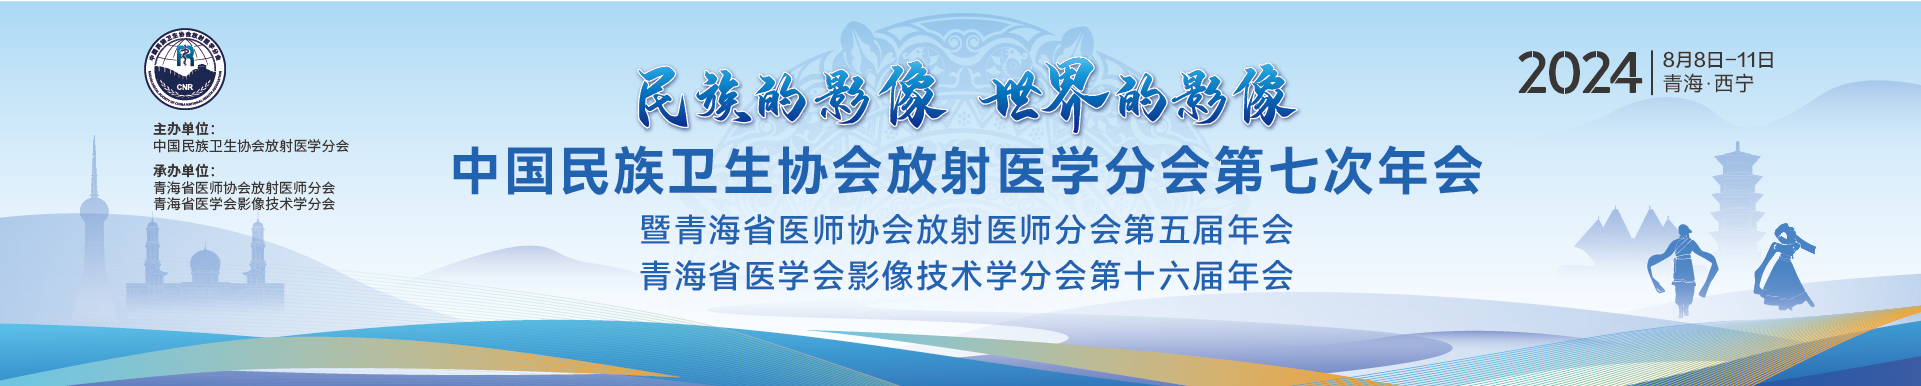 中国民族卫生协会放射医学分会第七次年会